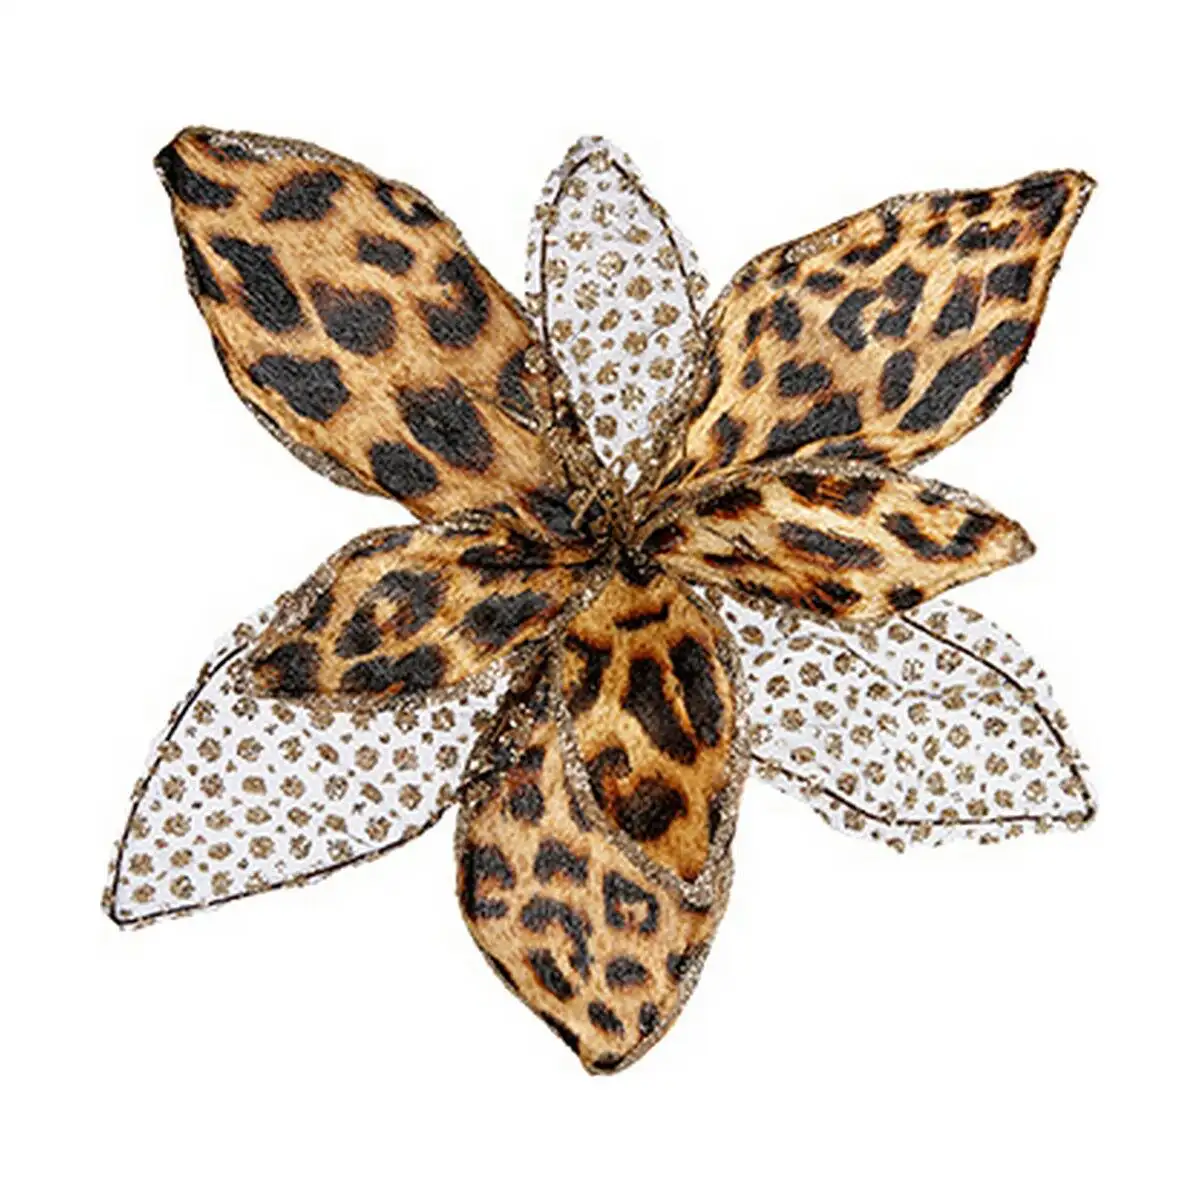 Fleur decorative leopard noel marron 35 x 35 x 35 cm_3758. DIAYTAR SENEGAL - Votre Passage Vers l'Excellence Shopping. Découvrez un catalogue en ligne qui offre une expérience d'achat exceptionnelle, avec des produits soigneusement sélectionnés pour satisfaire tous les goûts.